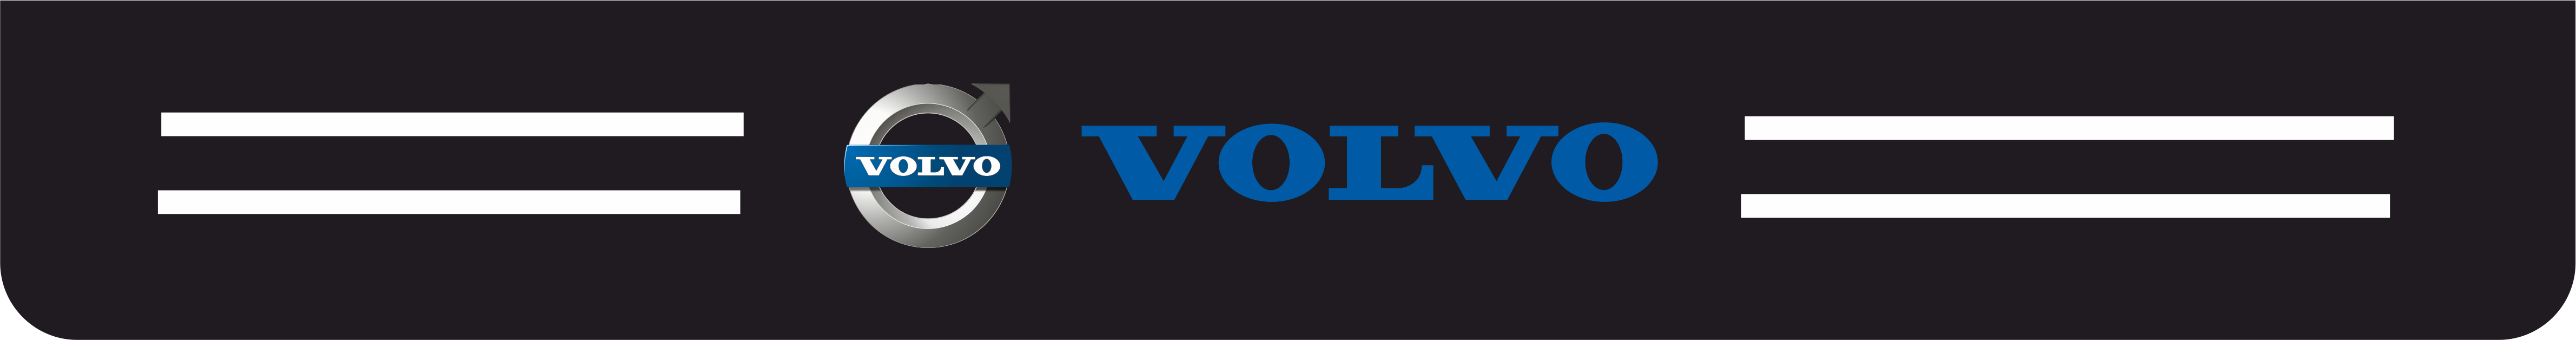 volvo - Volvo kapı eşiği sticker